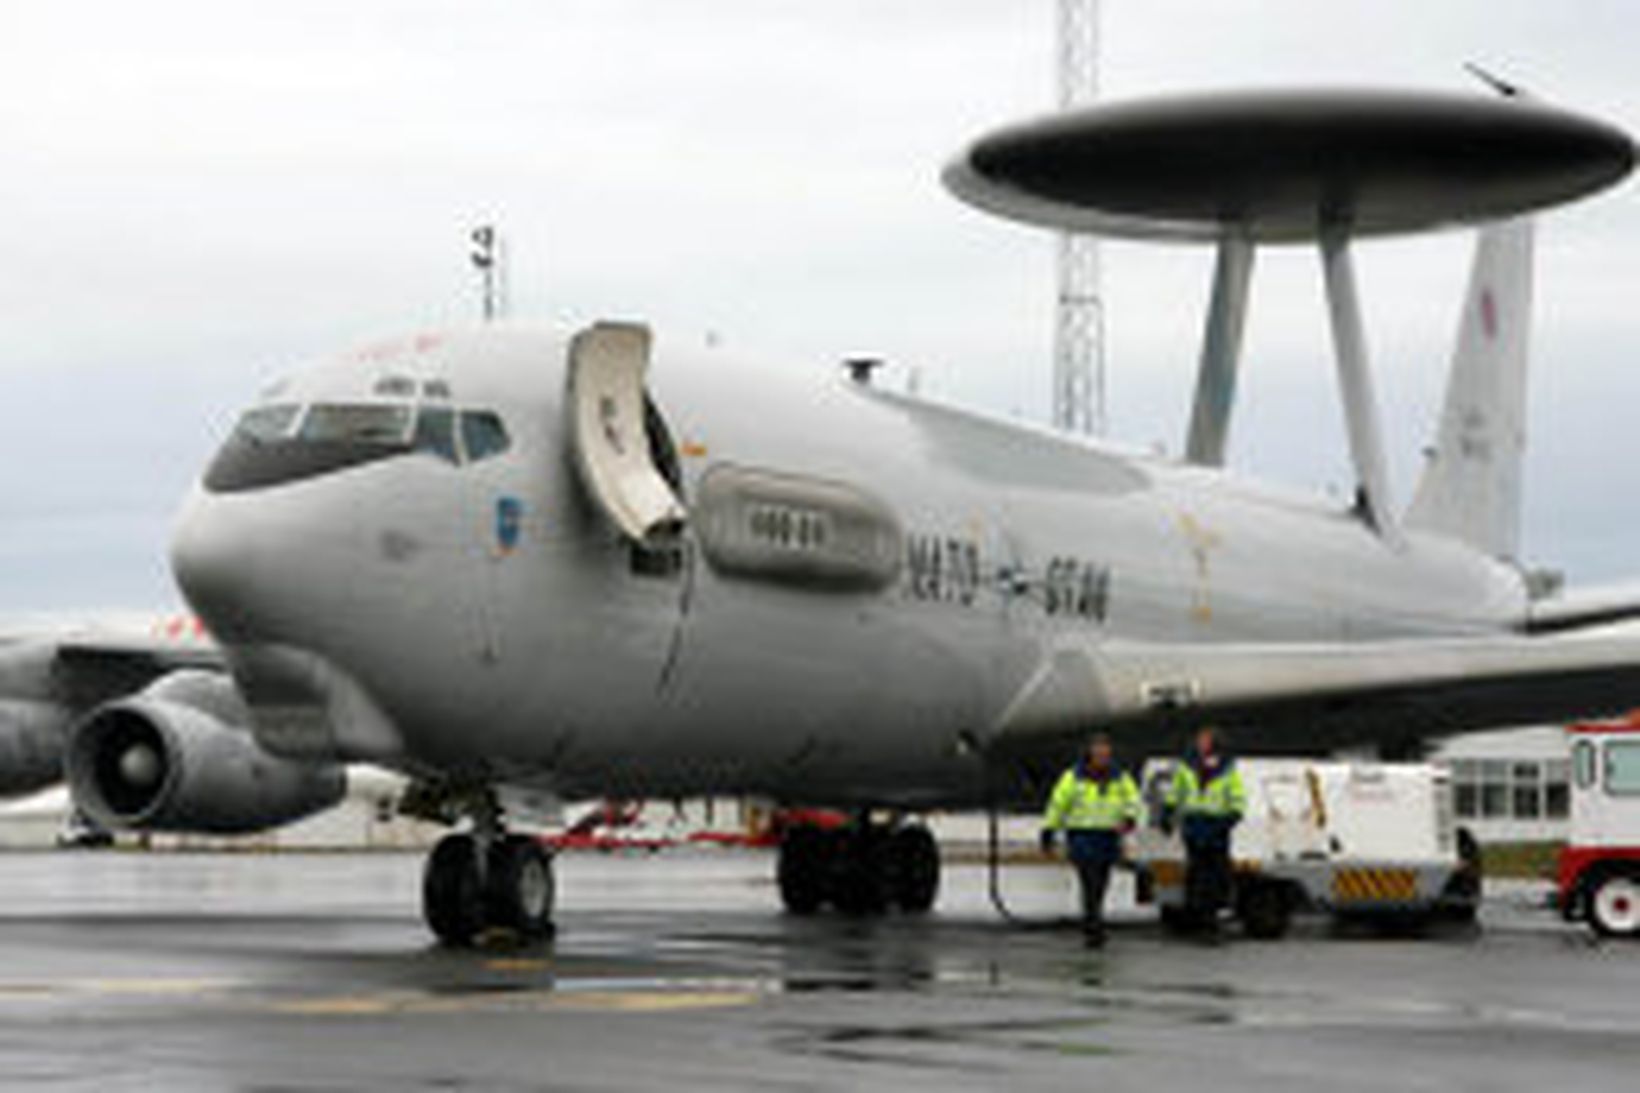 AWACS ratsjárflugvél, sem tók þátt í varnaræfingu hér á landi …